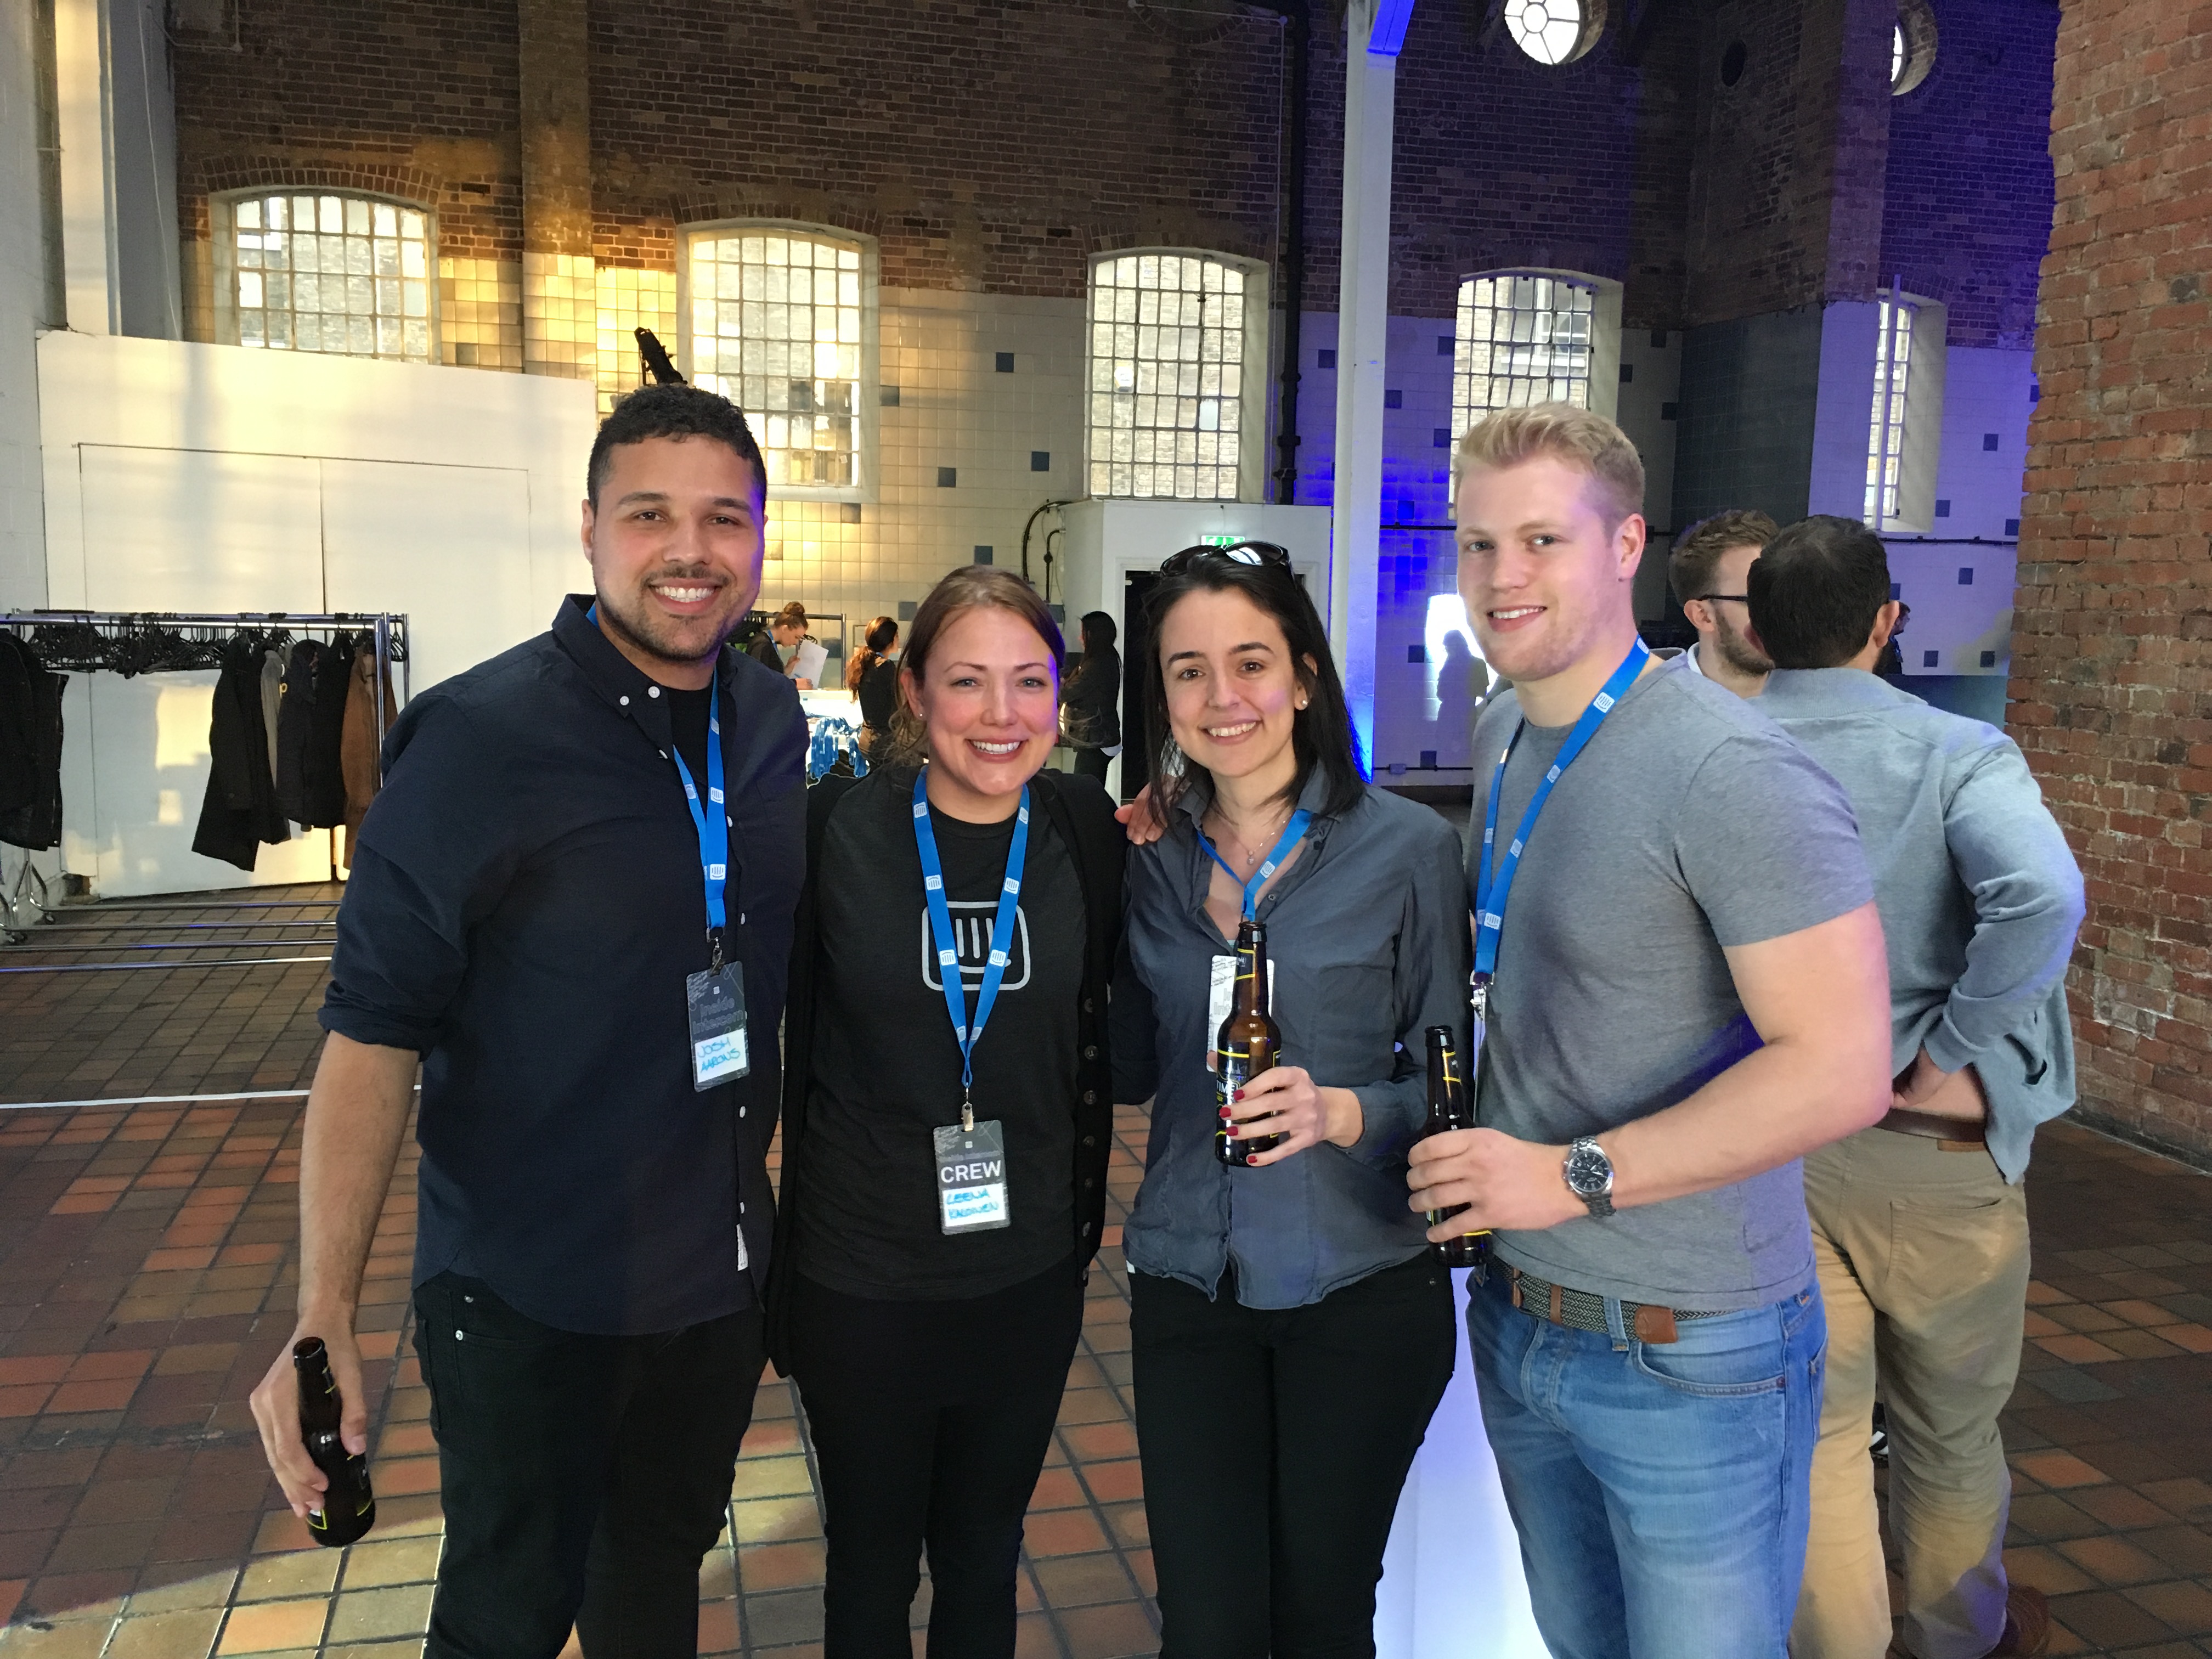 The SalesSeek team at Intercom London event